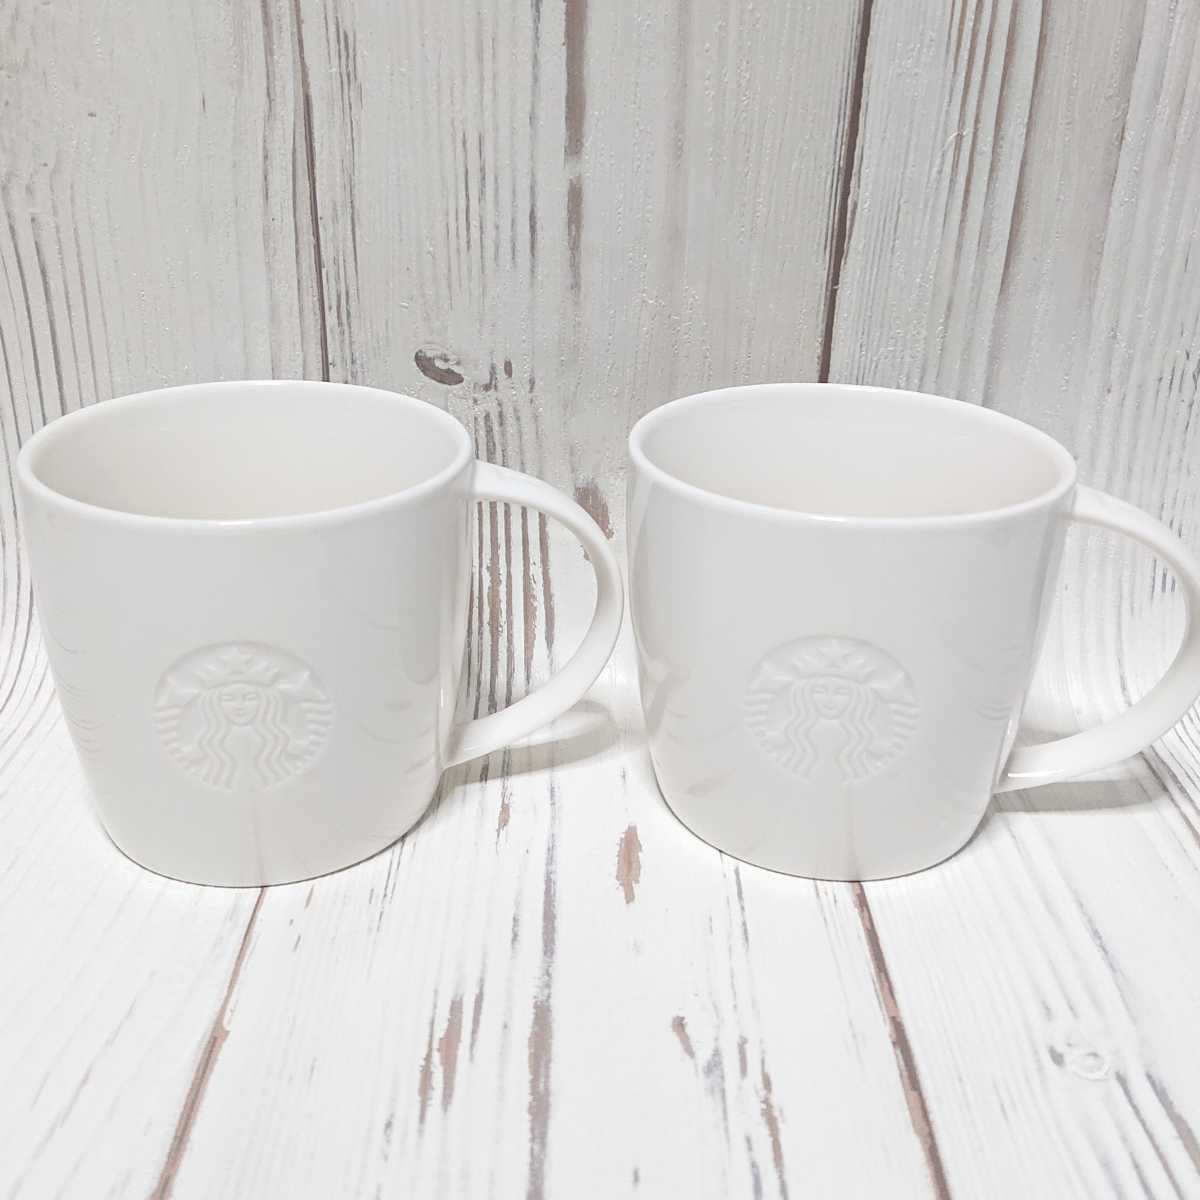 Новый неиспользованный 2 штуки Starbucks логотип кружка Starbucks кружка